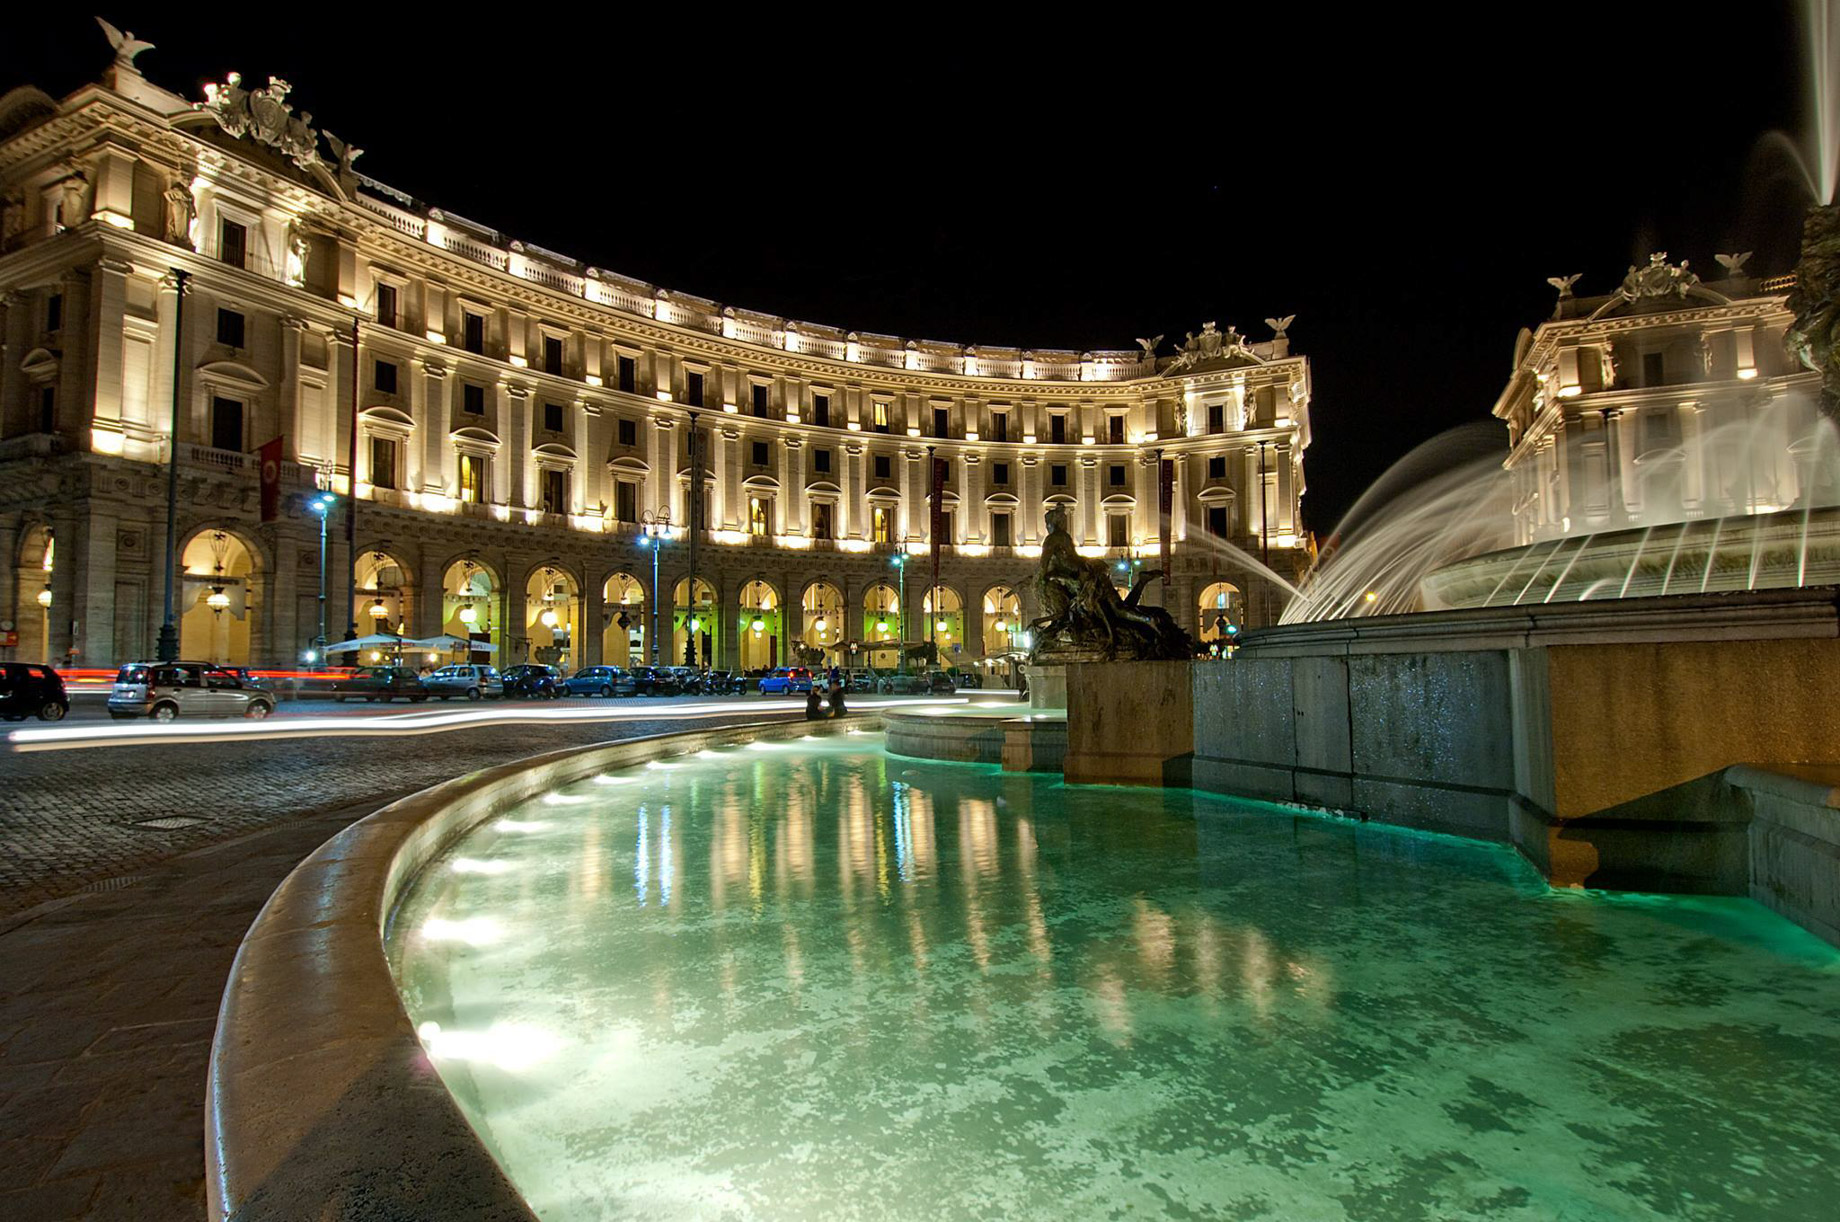 Anantara Palazzo Naiadi Rome Hotel - Rome, Italy - Exterior Fountain